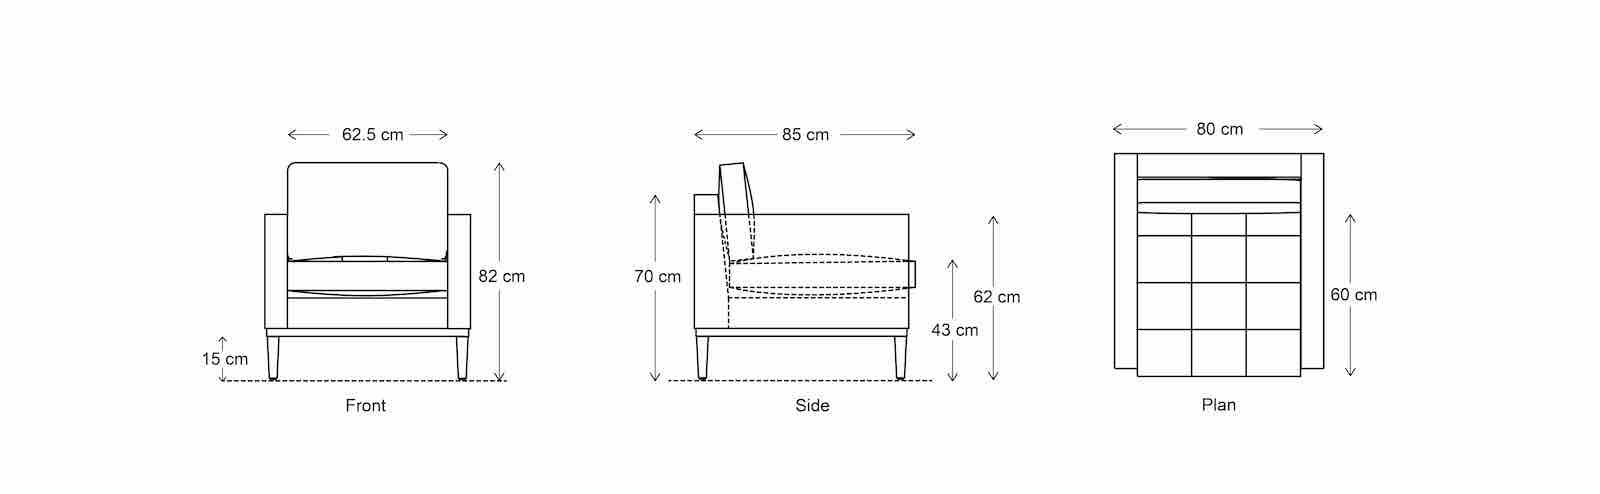 chaise longue sofa dimensions